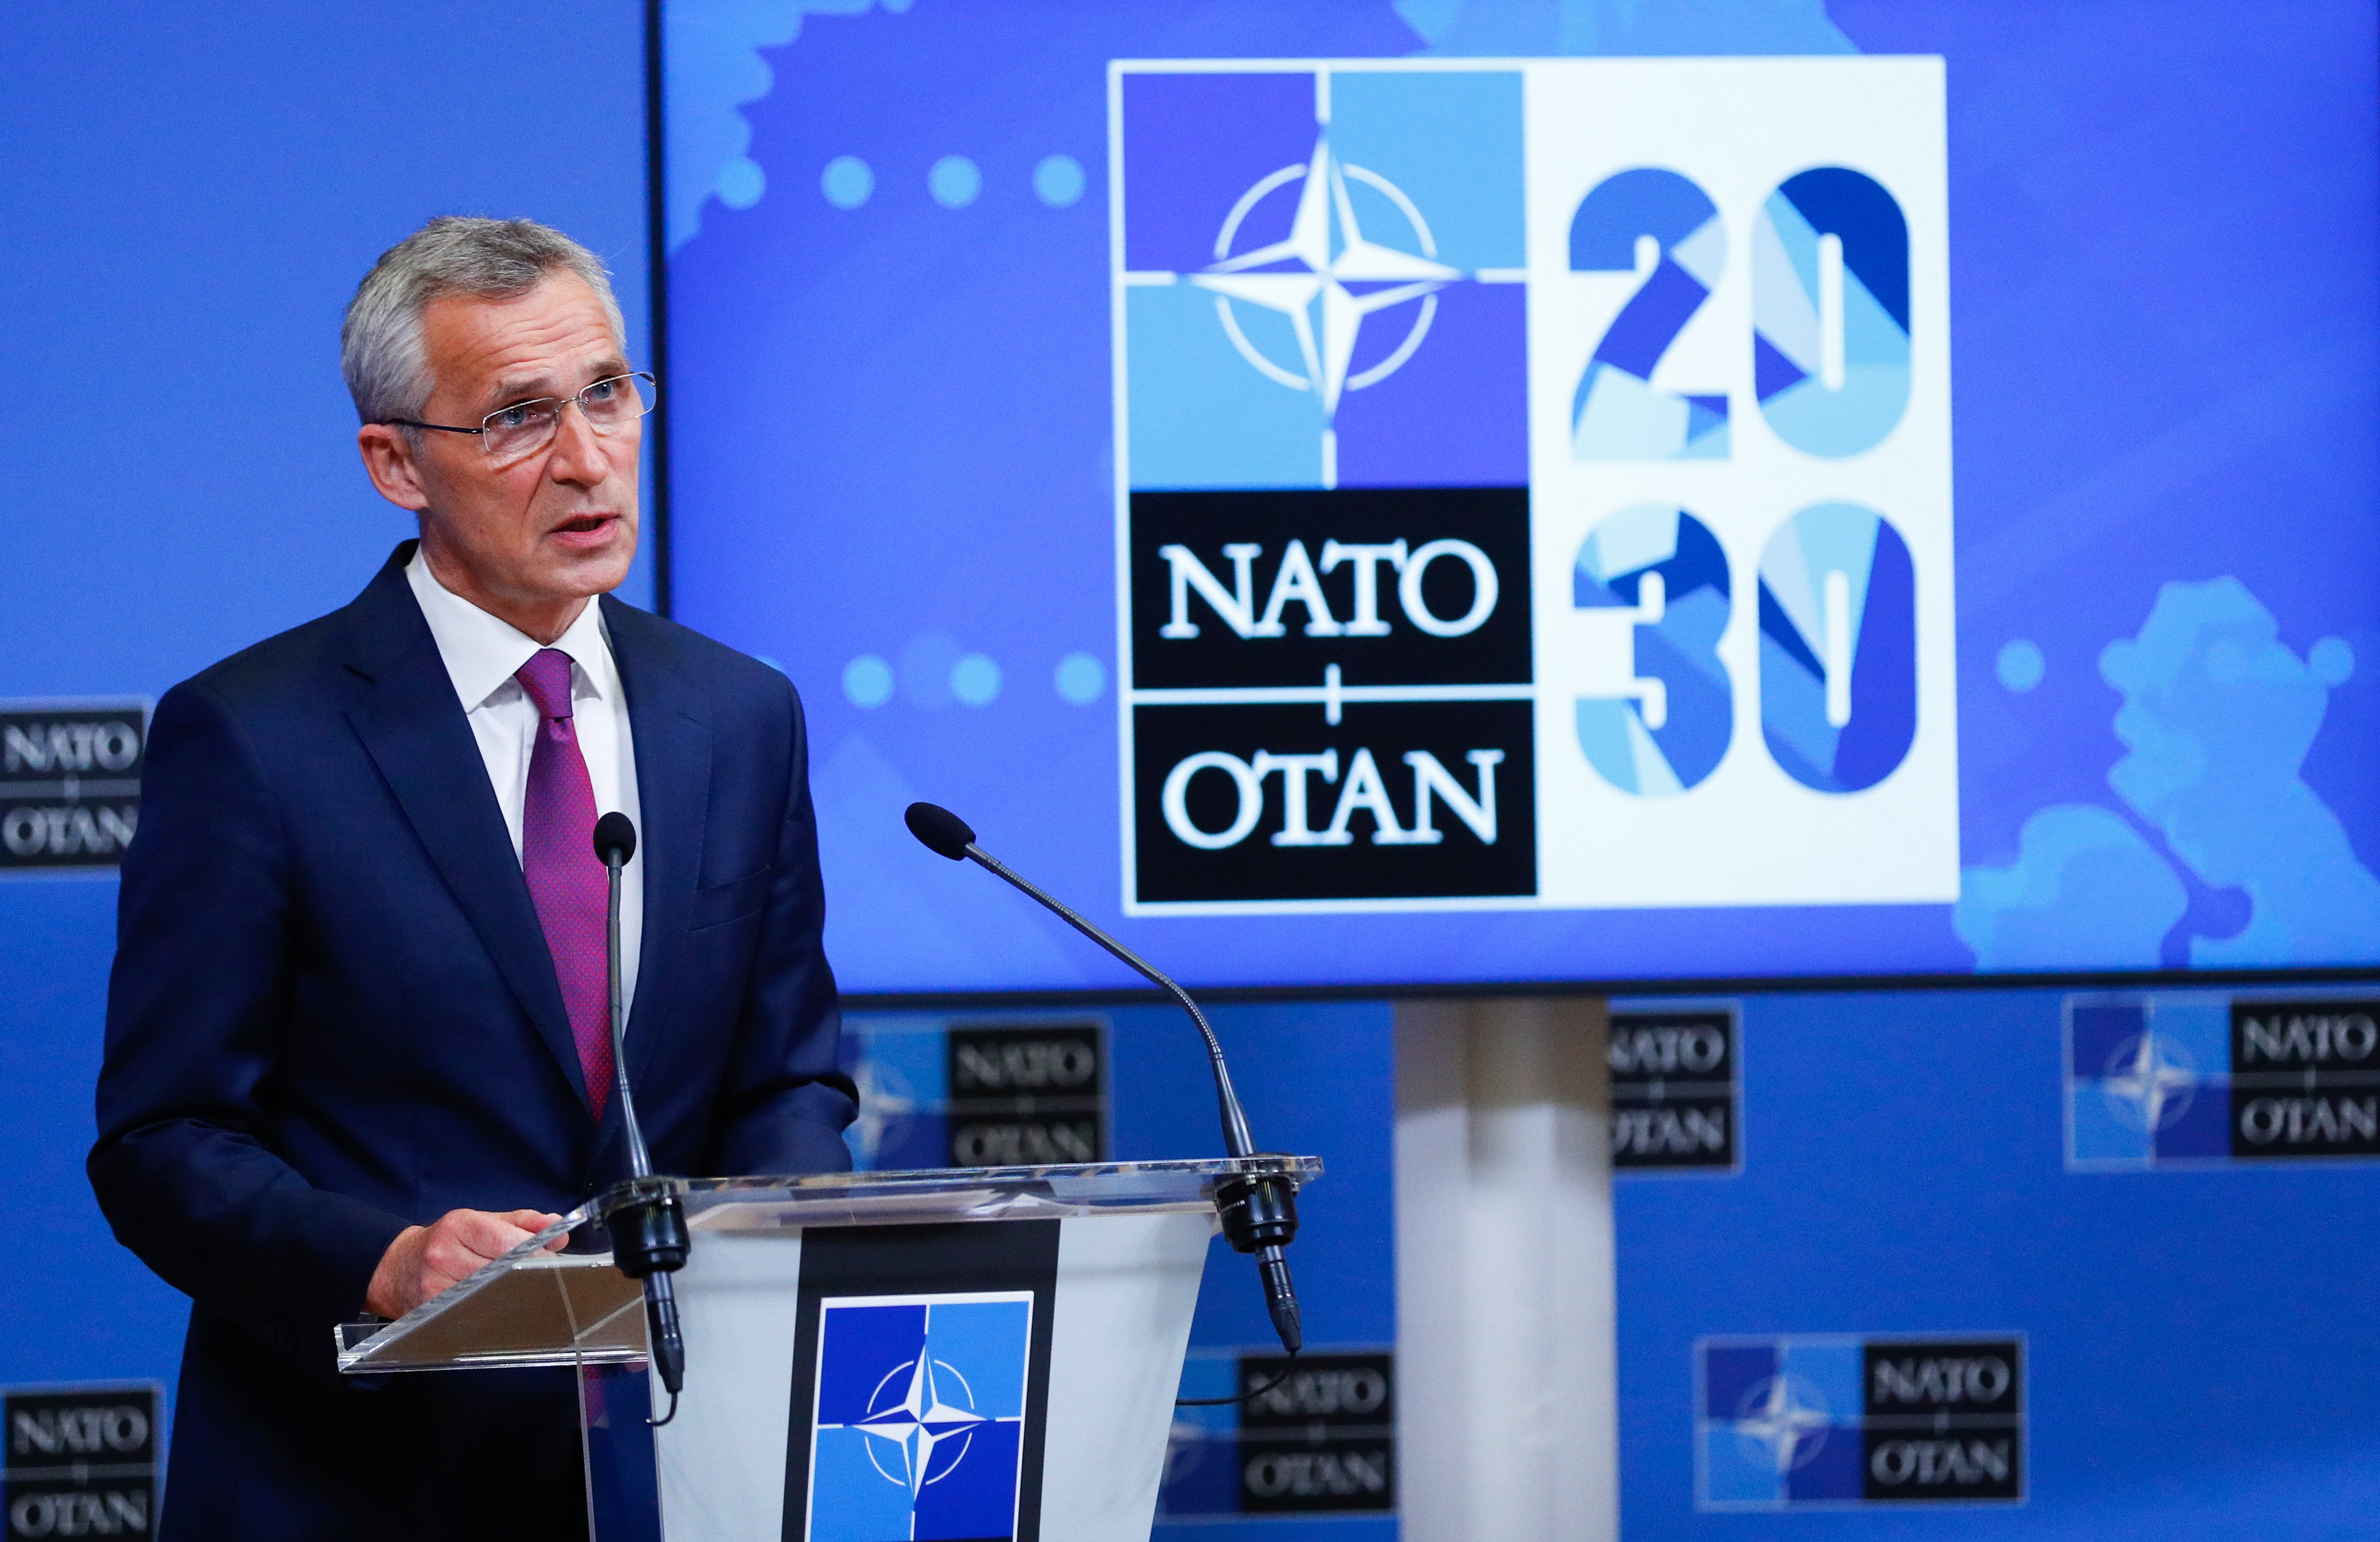 L'OTAN descarta entrar en una nova "guerra freda" amb la Xina